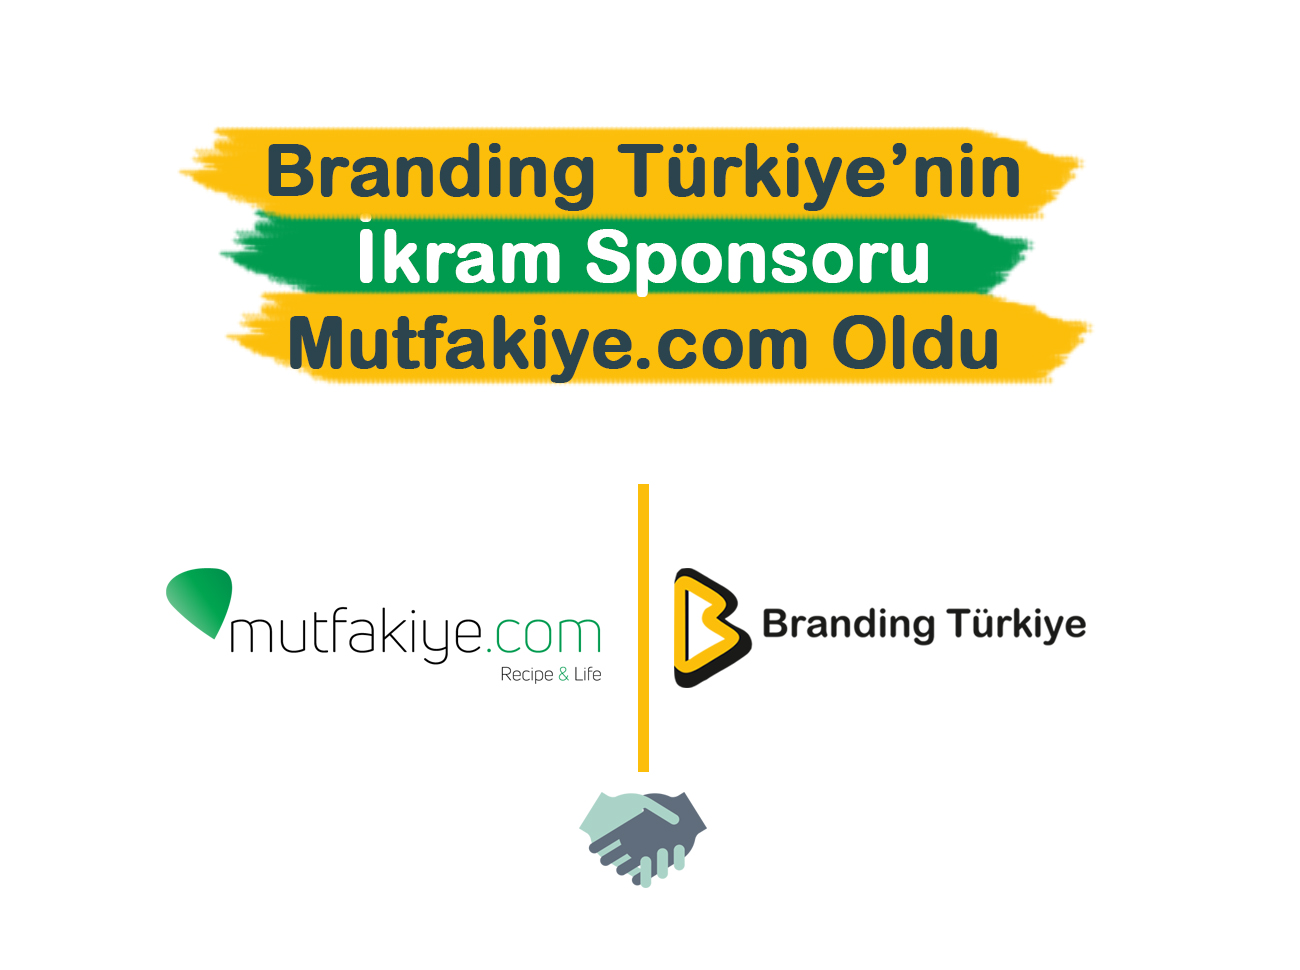 Branding Türkiye’nin İkram Sponsoru Mutfakiye.com Oldu